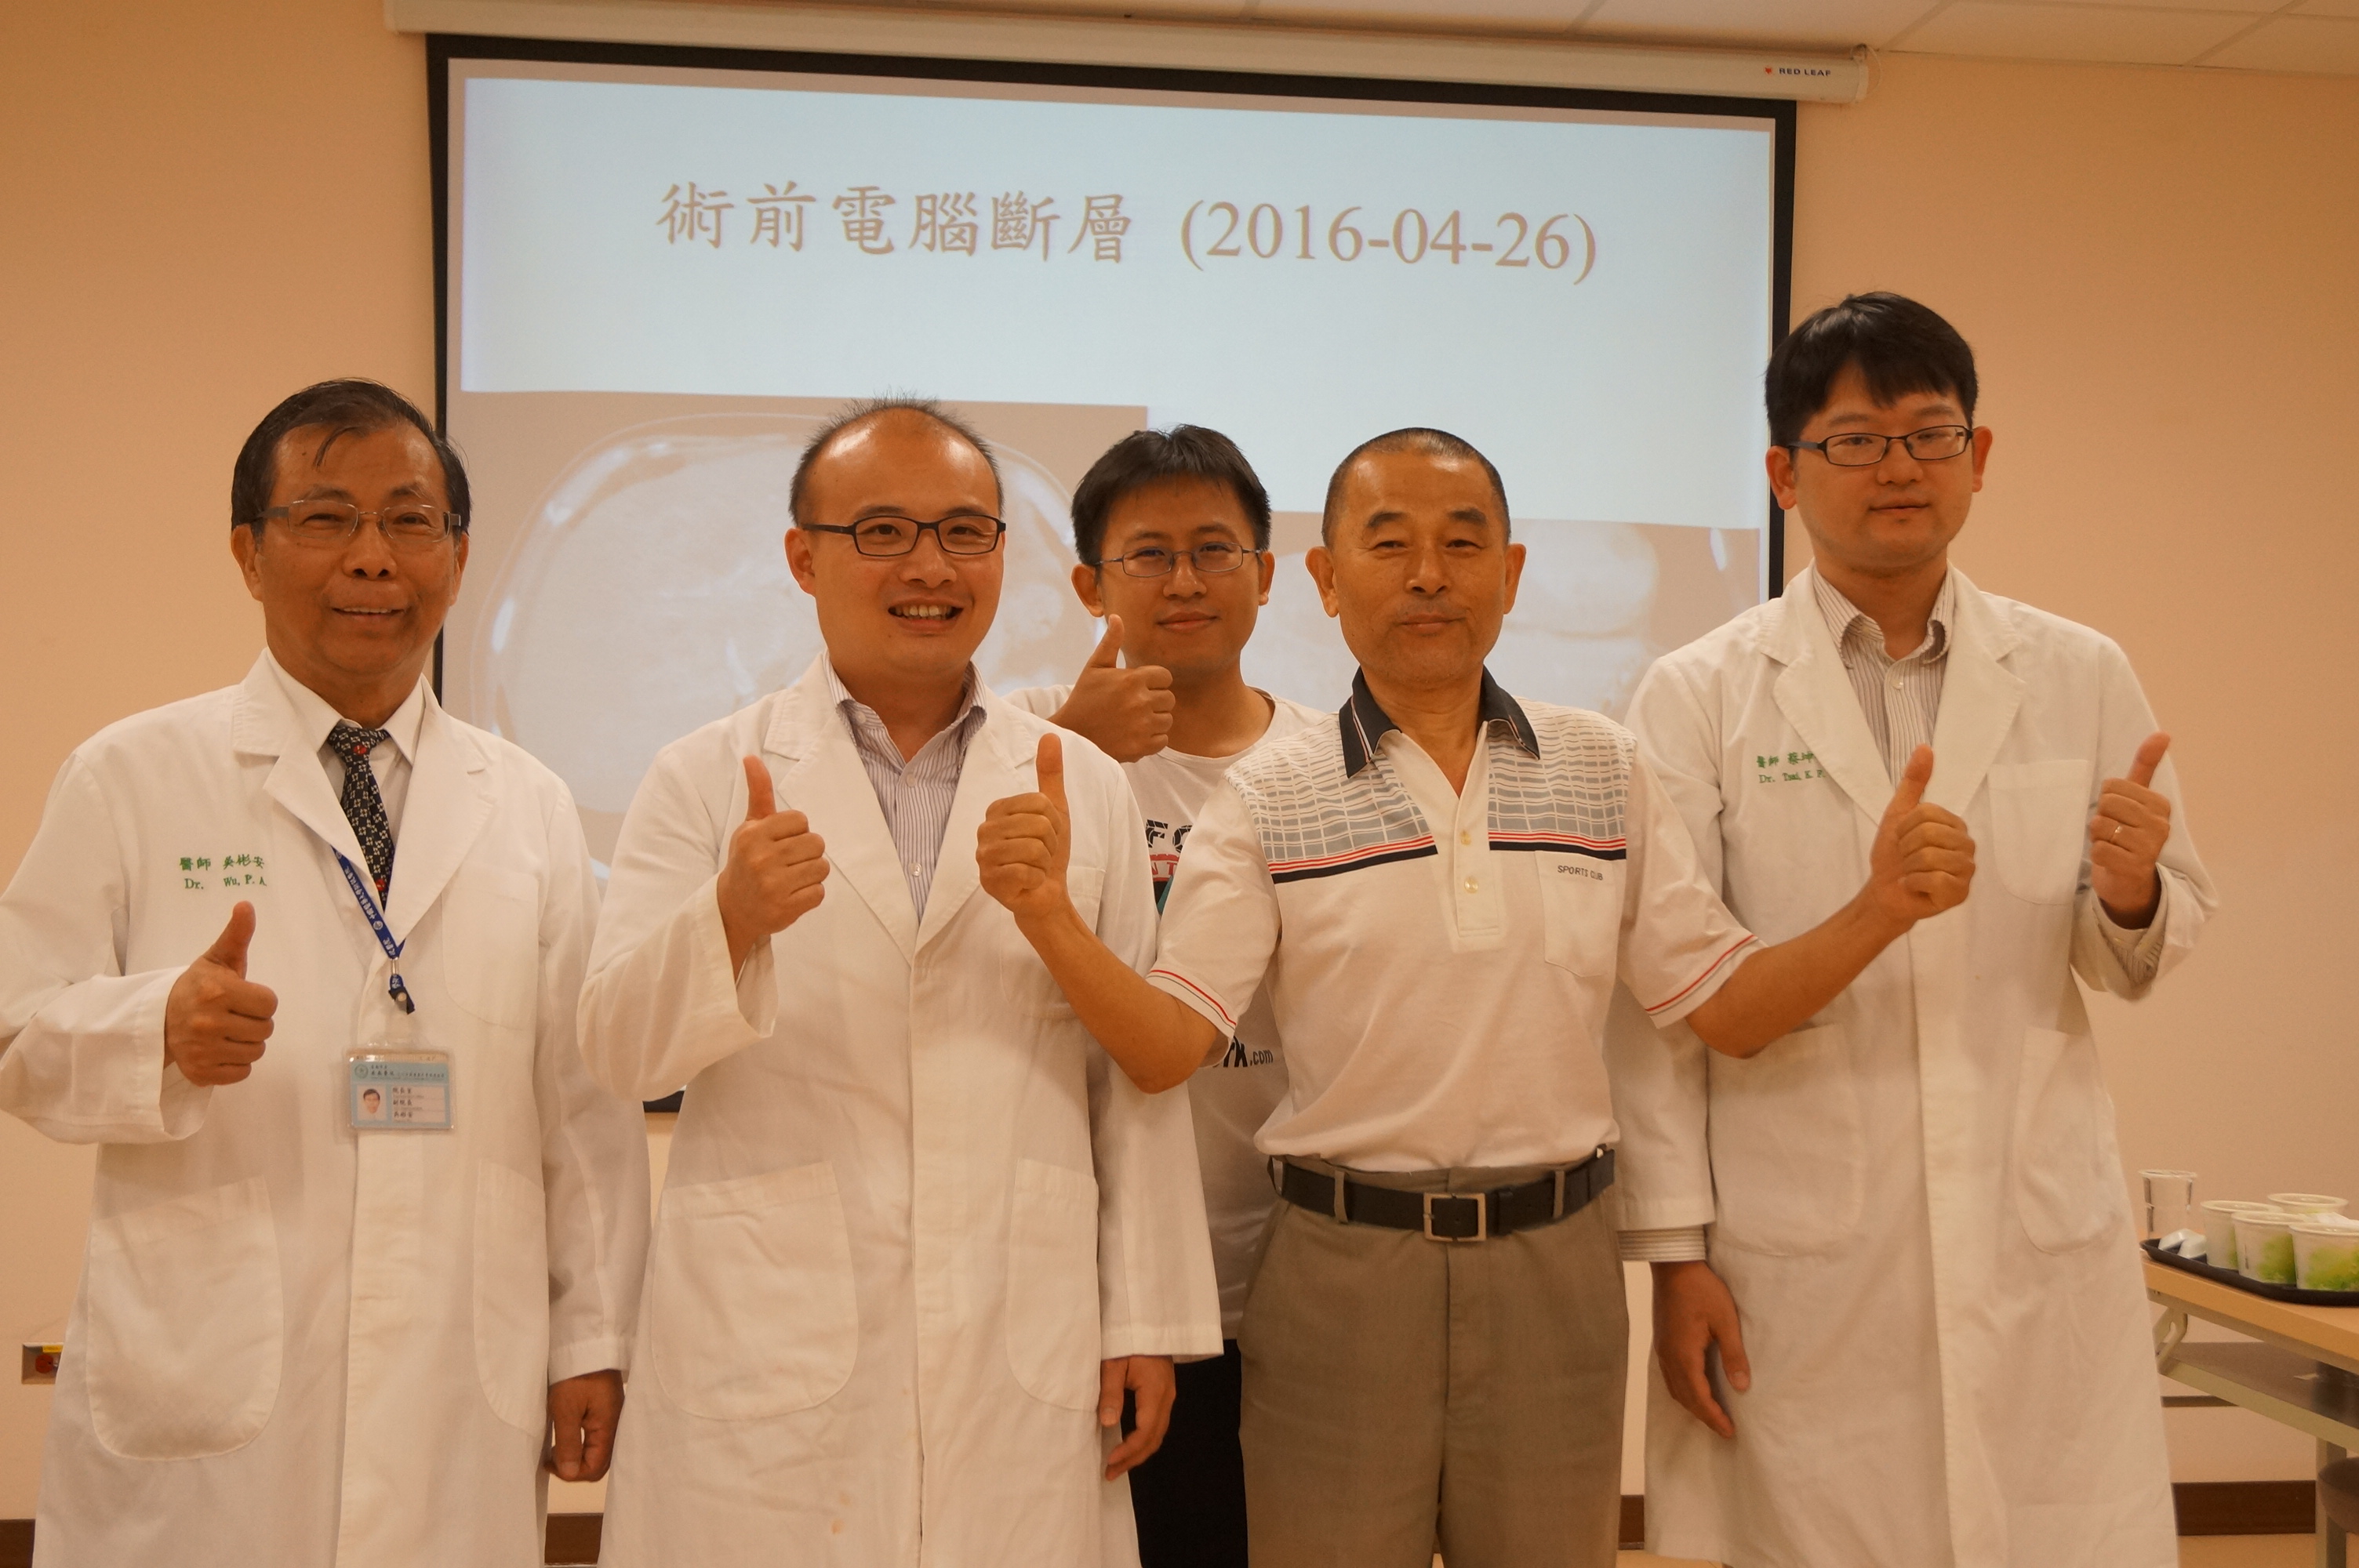 吳彬安副院長、李明峰醫師、病患兒子、陳先生、蔡坤峰醫師 (左起)